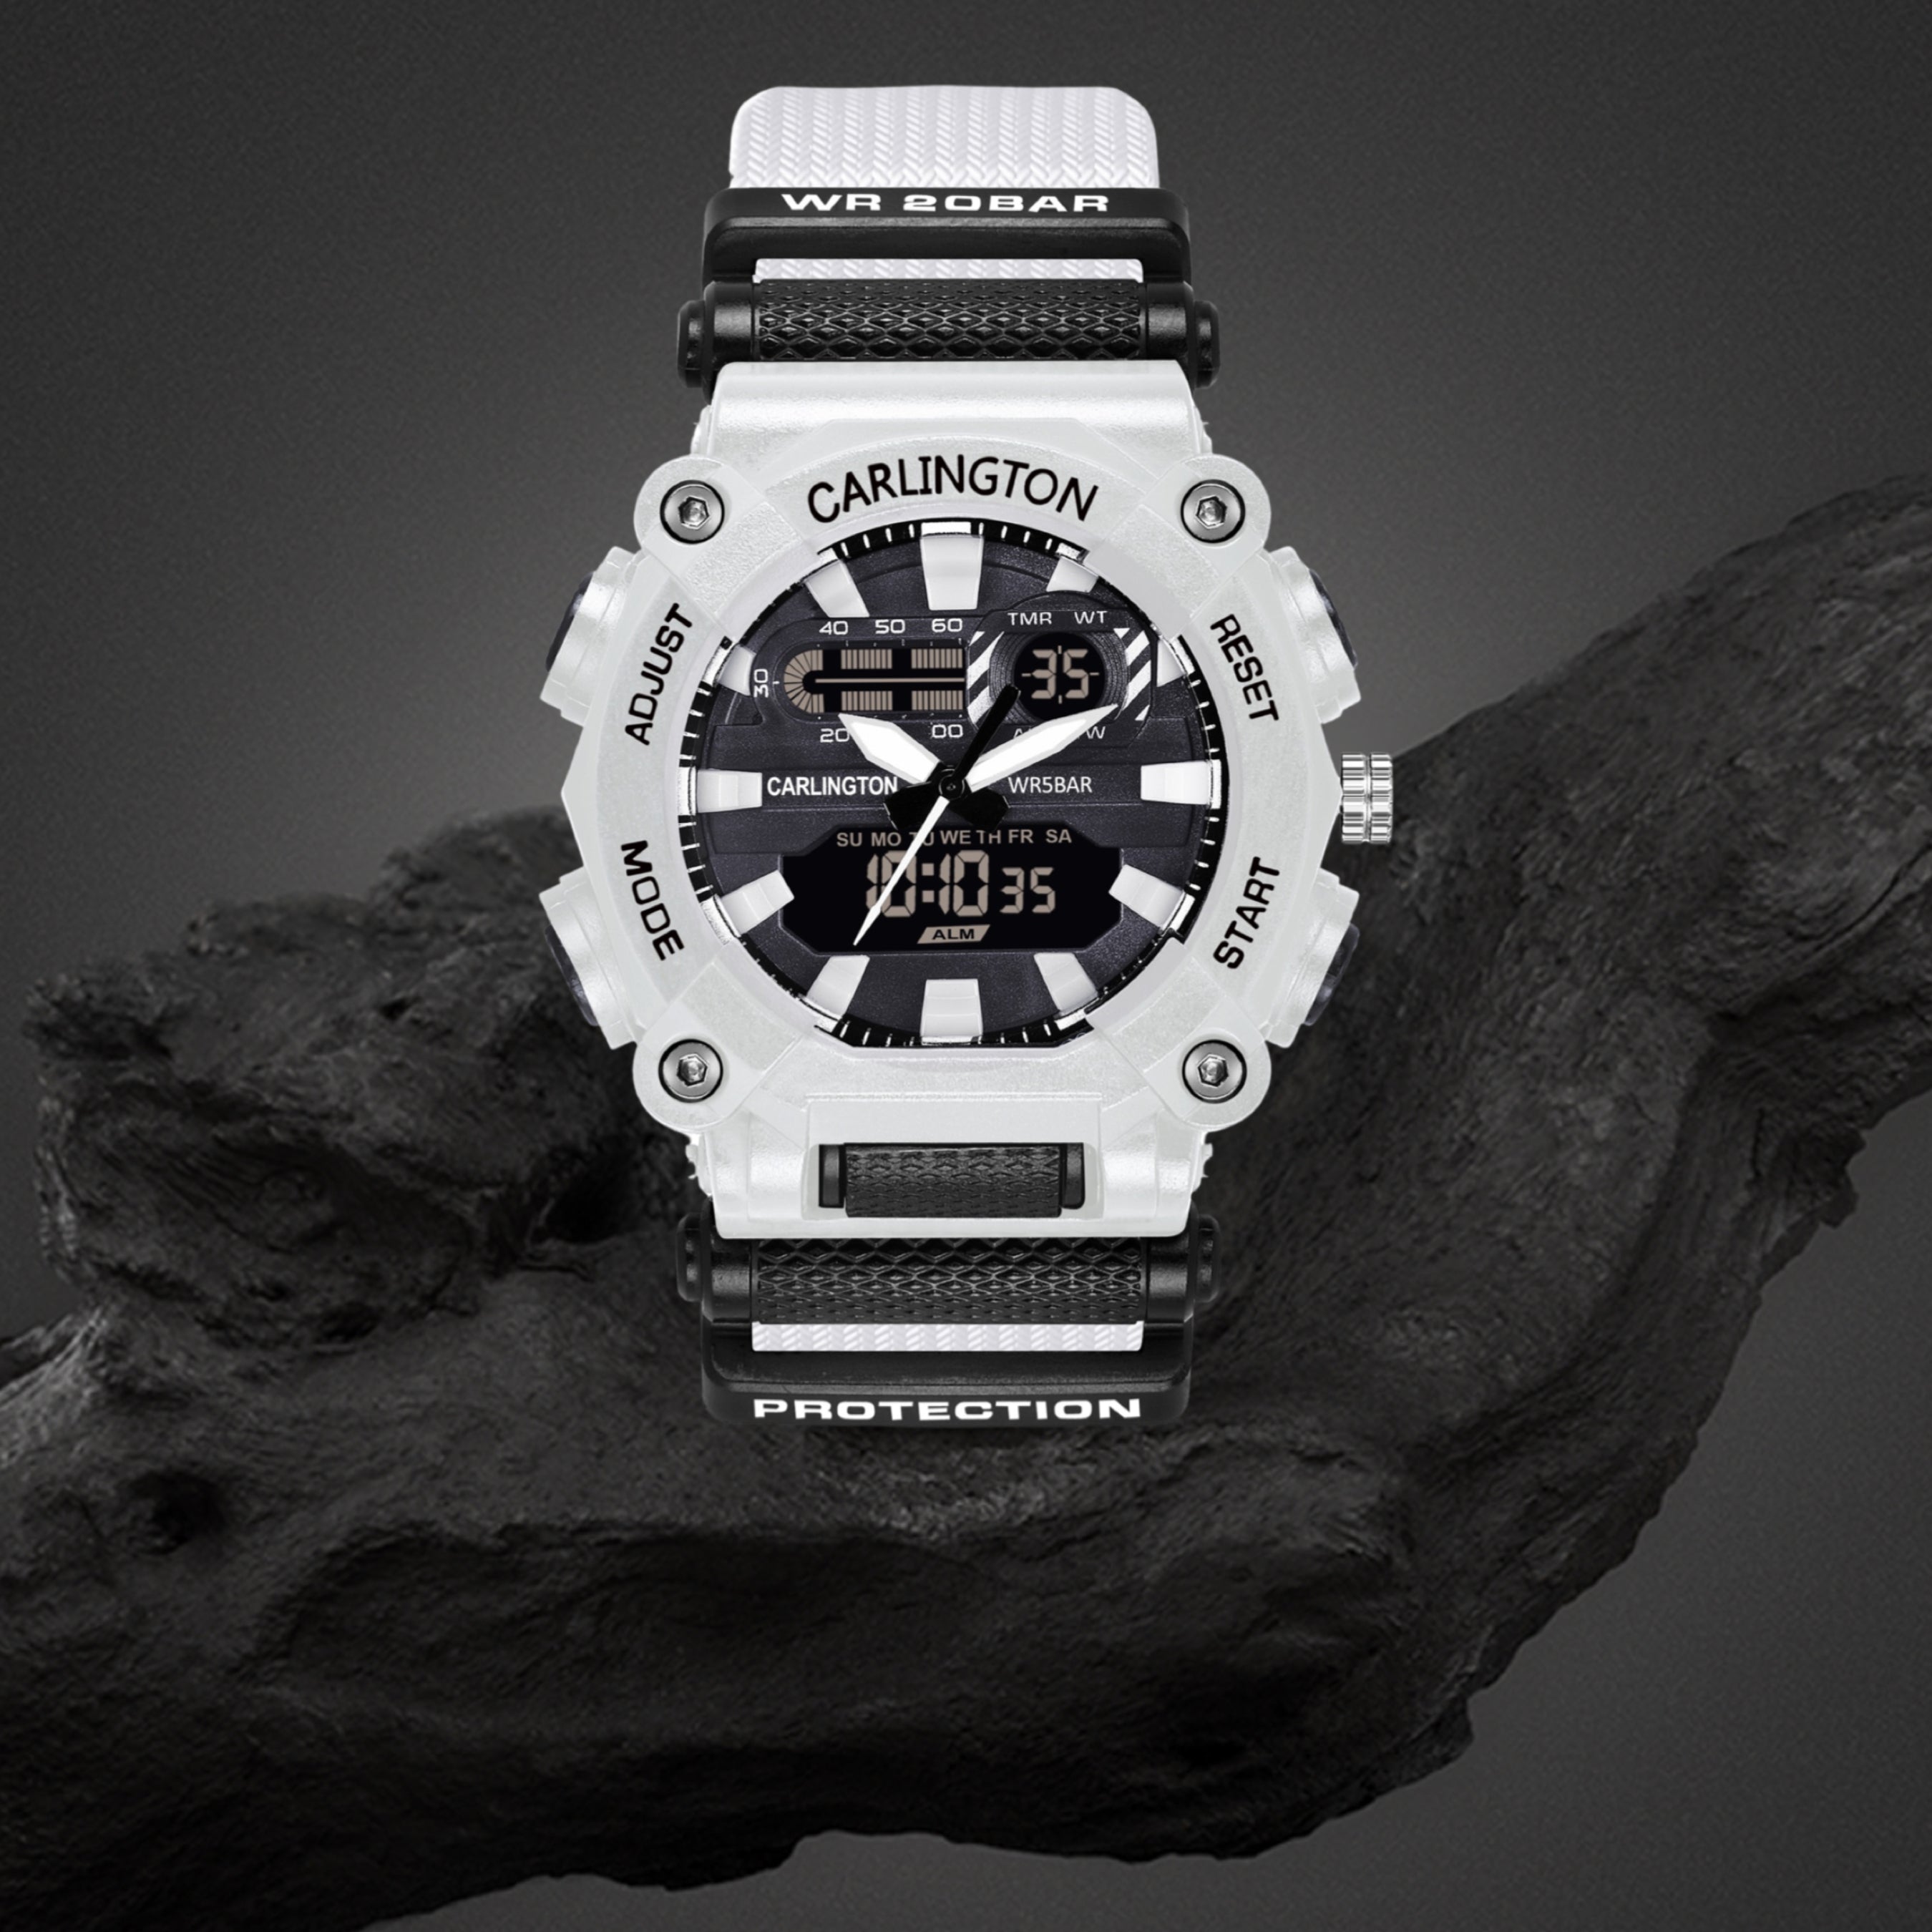 G-Shock GBD200 White & Black Digital Watch | Zumiez